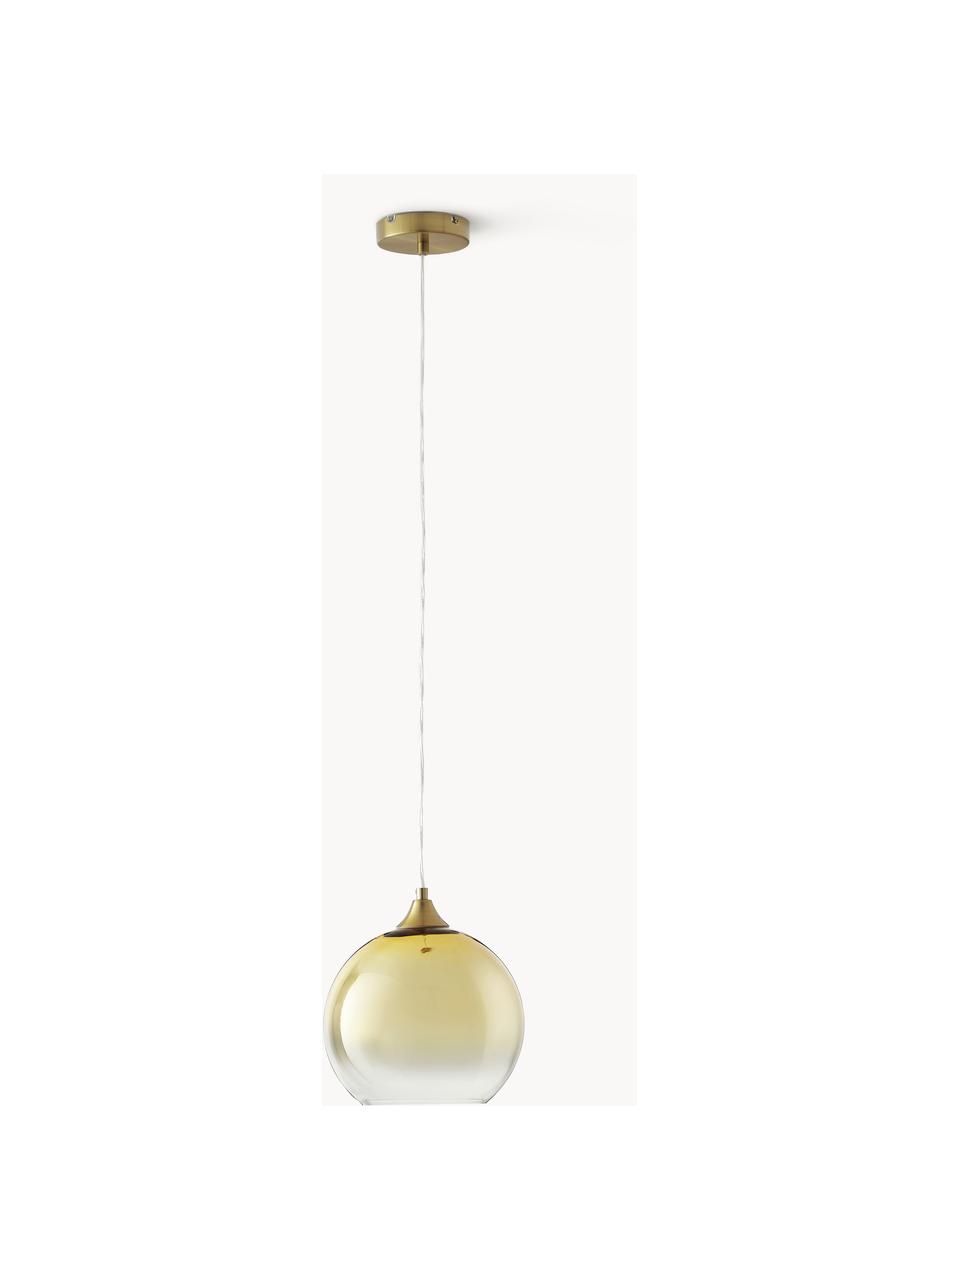 Lámpara de techo esfera Mineleo, Pantalla: vidrio, Anclaje: metal cepillado, Cable: plástico, Dorado, transparente, Ø 25 cm